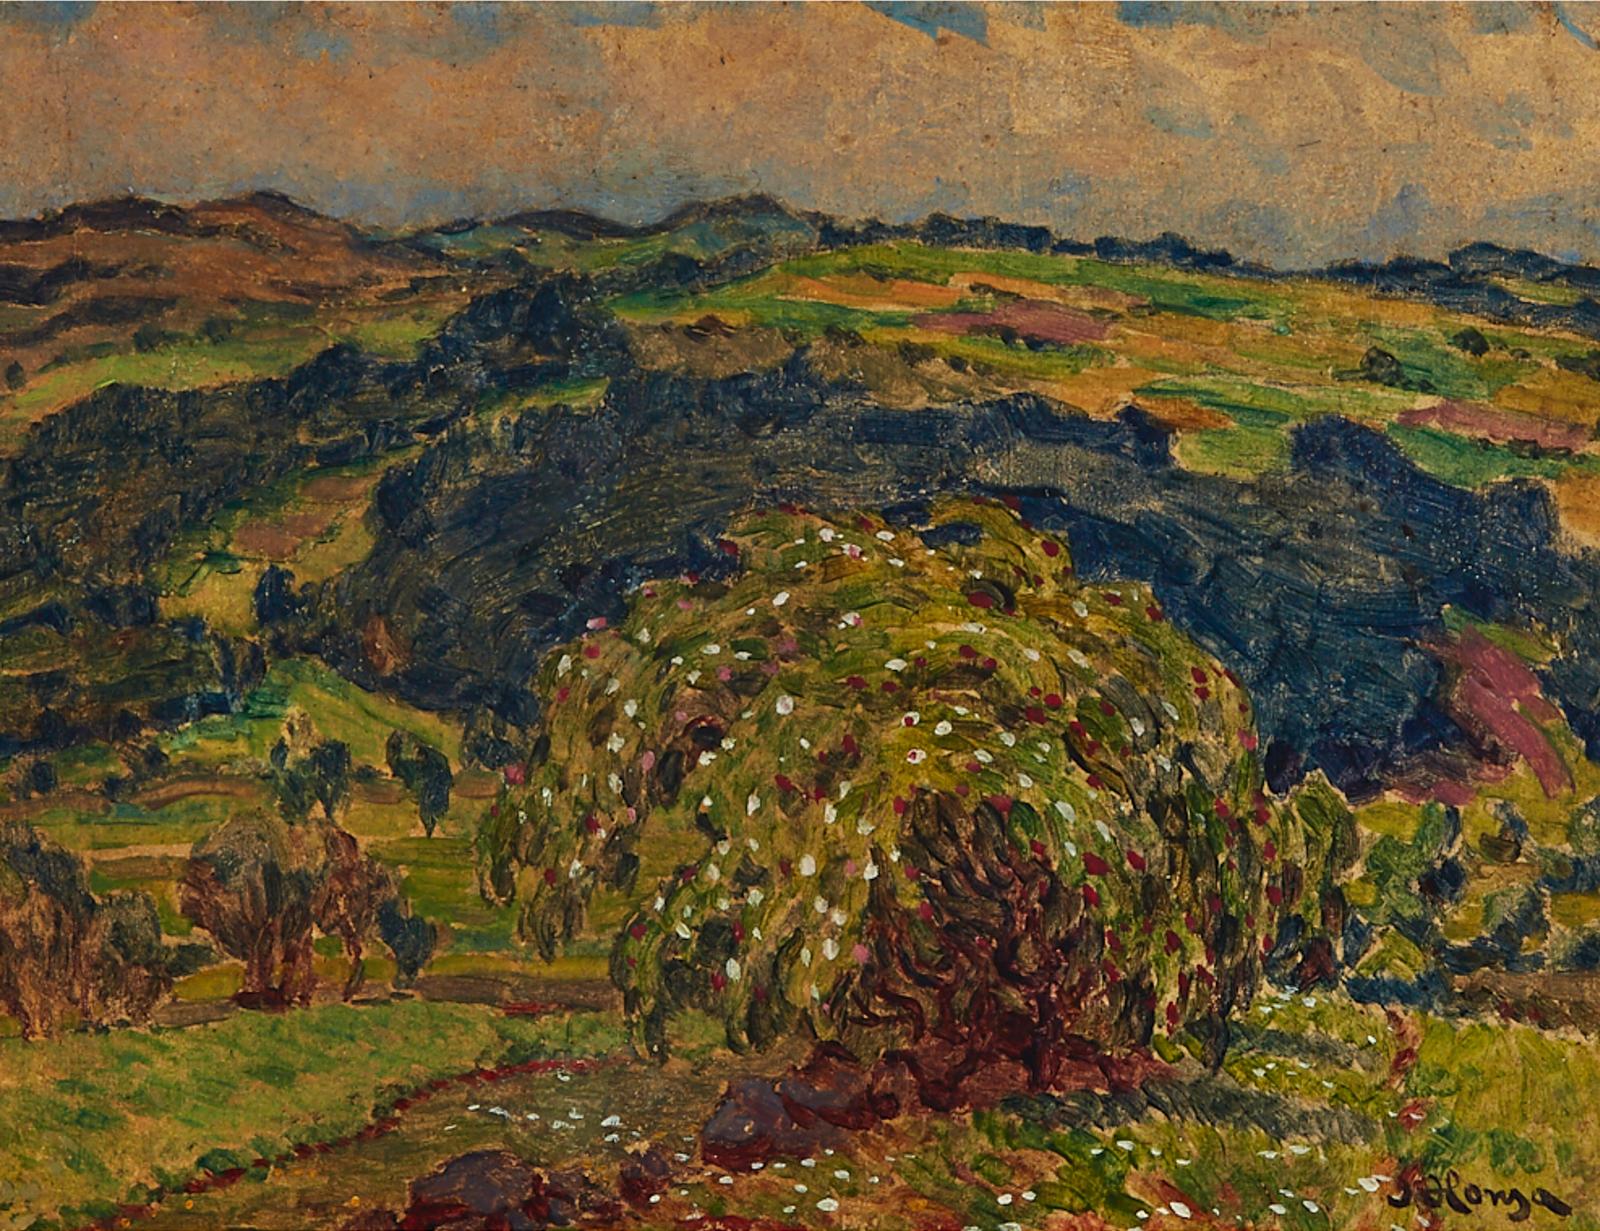 Jan Honsa (1876-1937) - Summer Hillside With Old Tree In Blossom